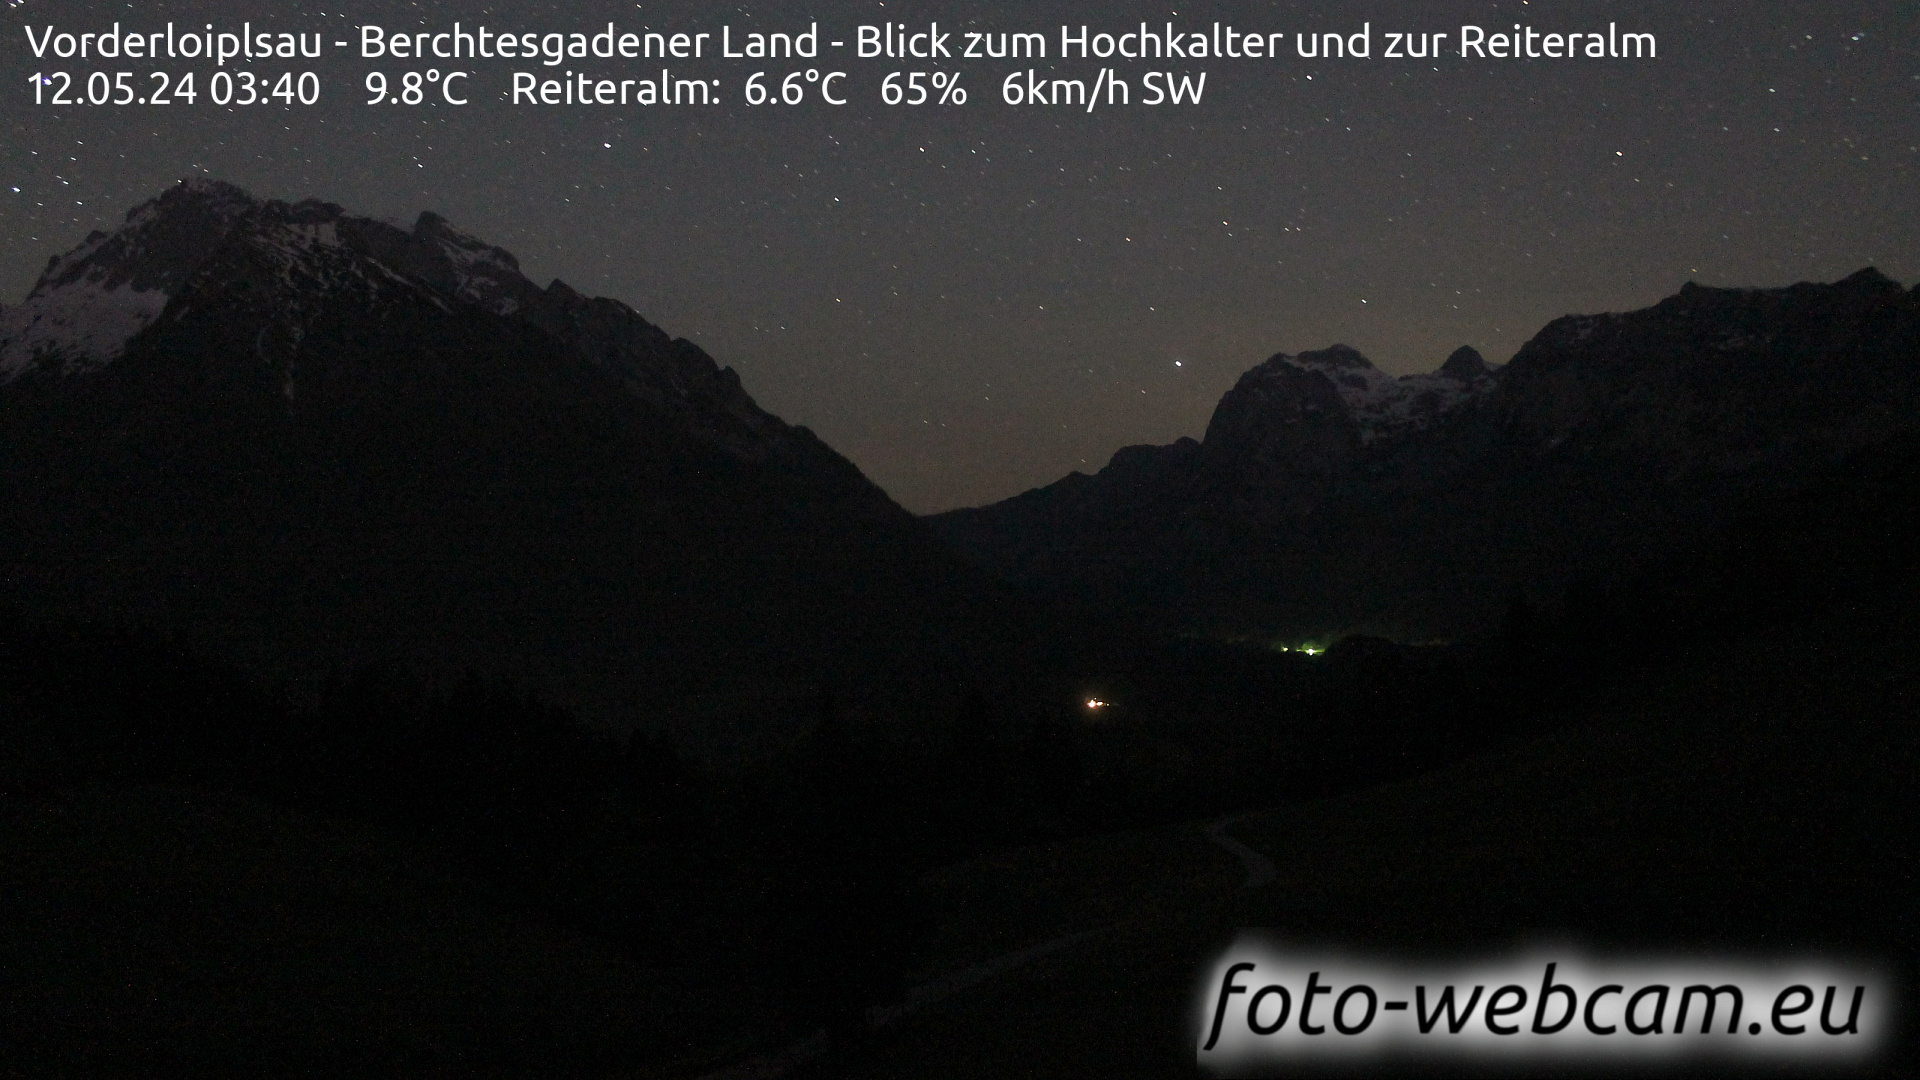 Ramsau bei Berchtesgaden Je. 03:48